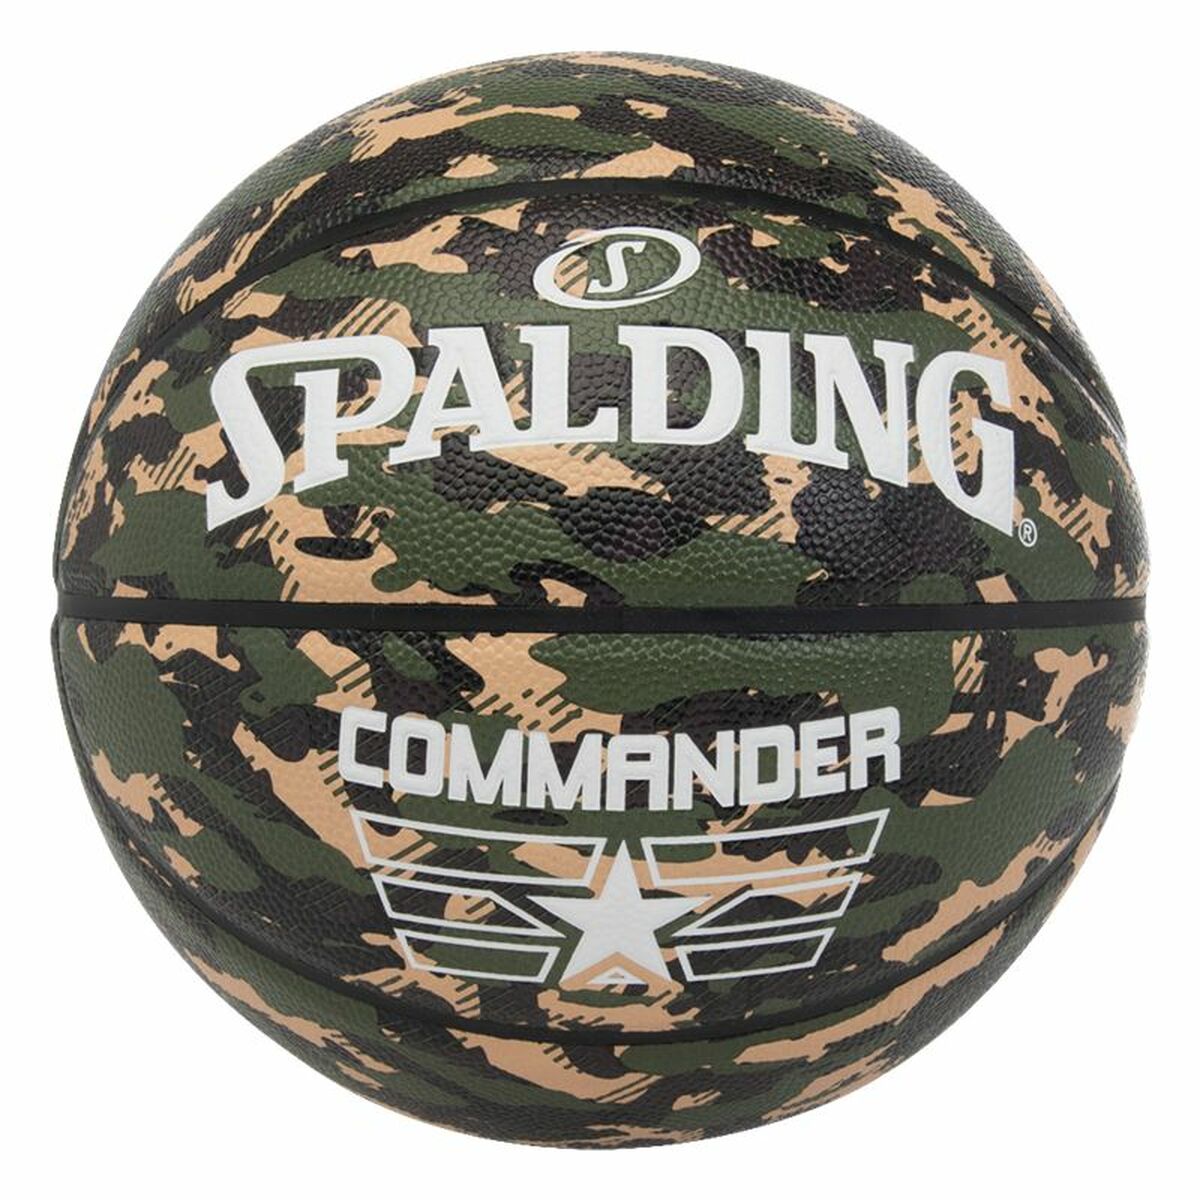 Basketball Spalding Commander Camo 7 grün